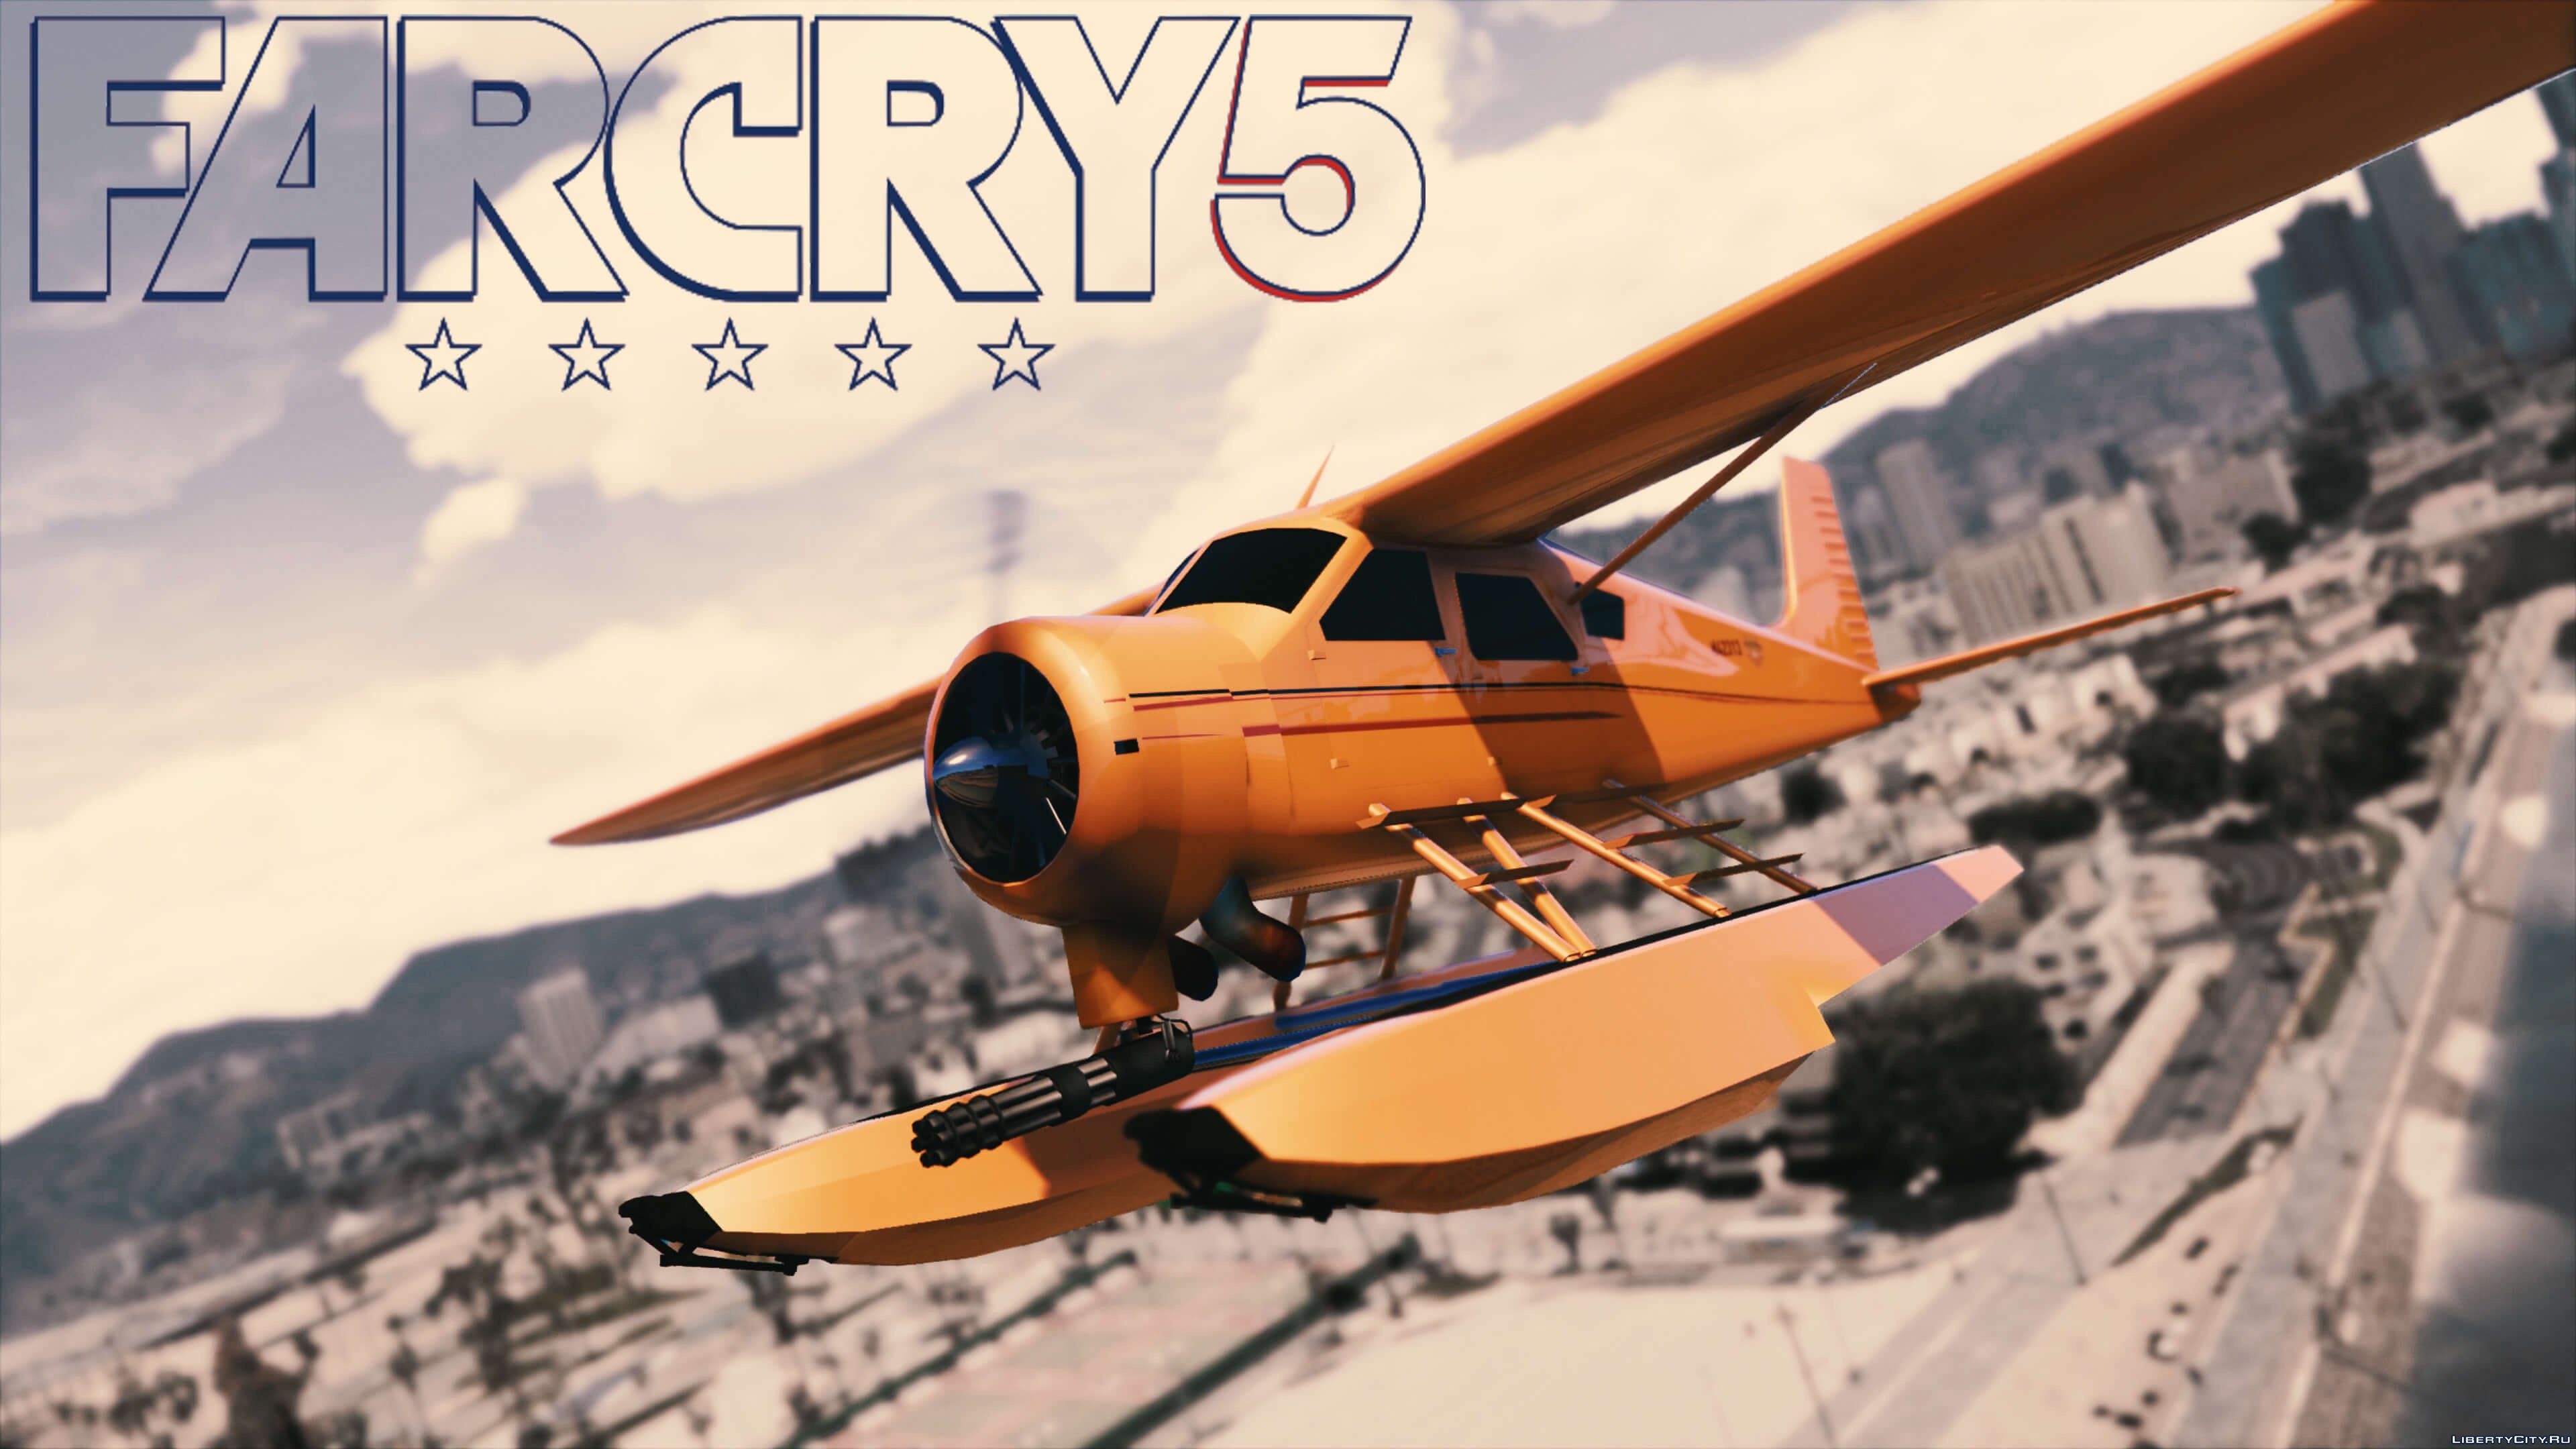 Фар край 5 самолеты. Far Cry 5 самолет. Самолет из far Cry 5. Гидроплан Dodo в GTA 5. Фар край 4 самолет.